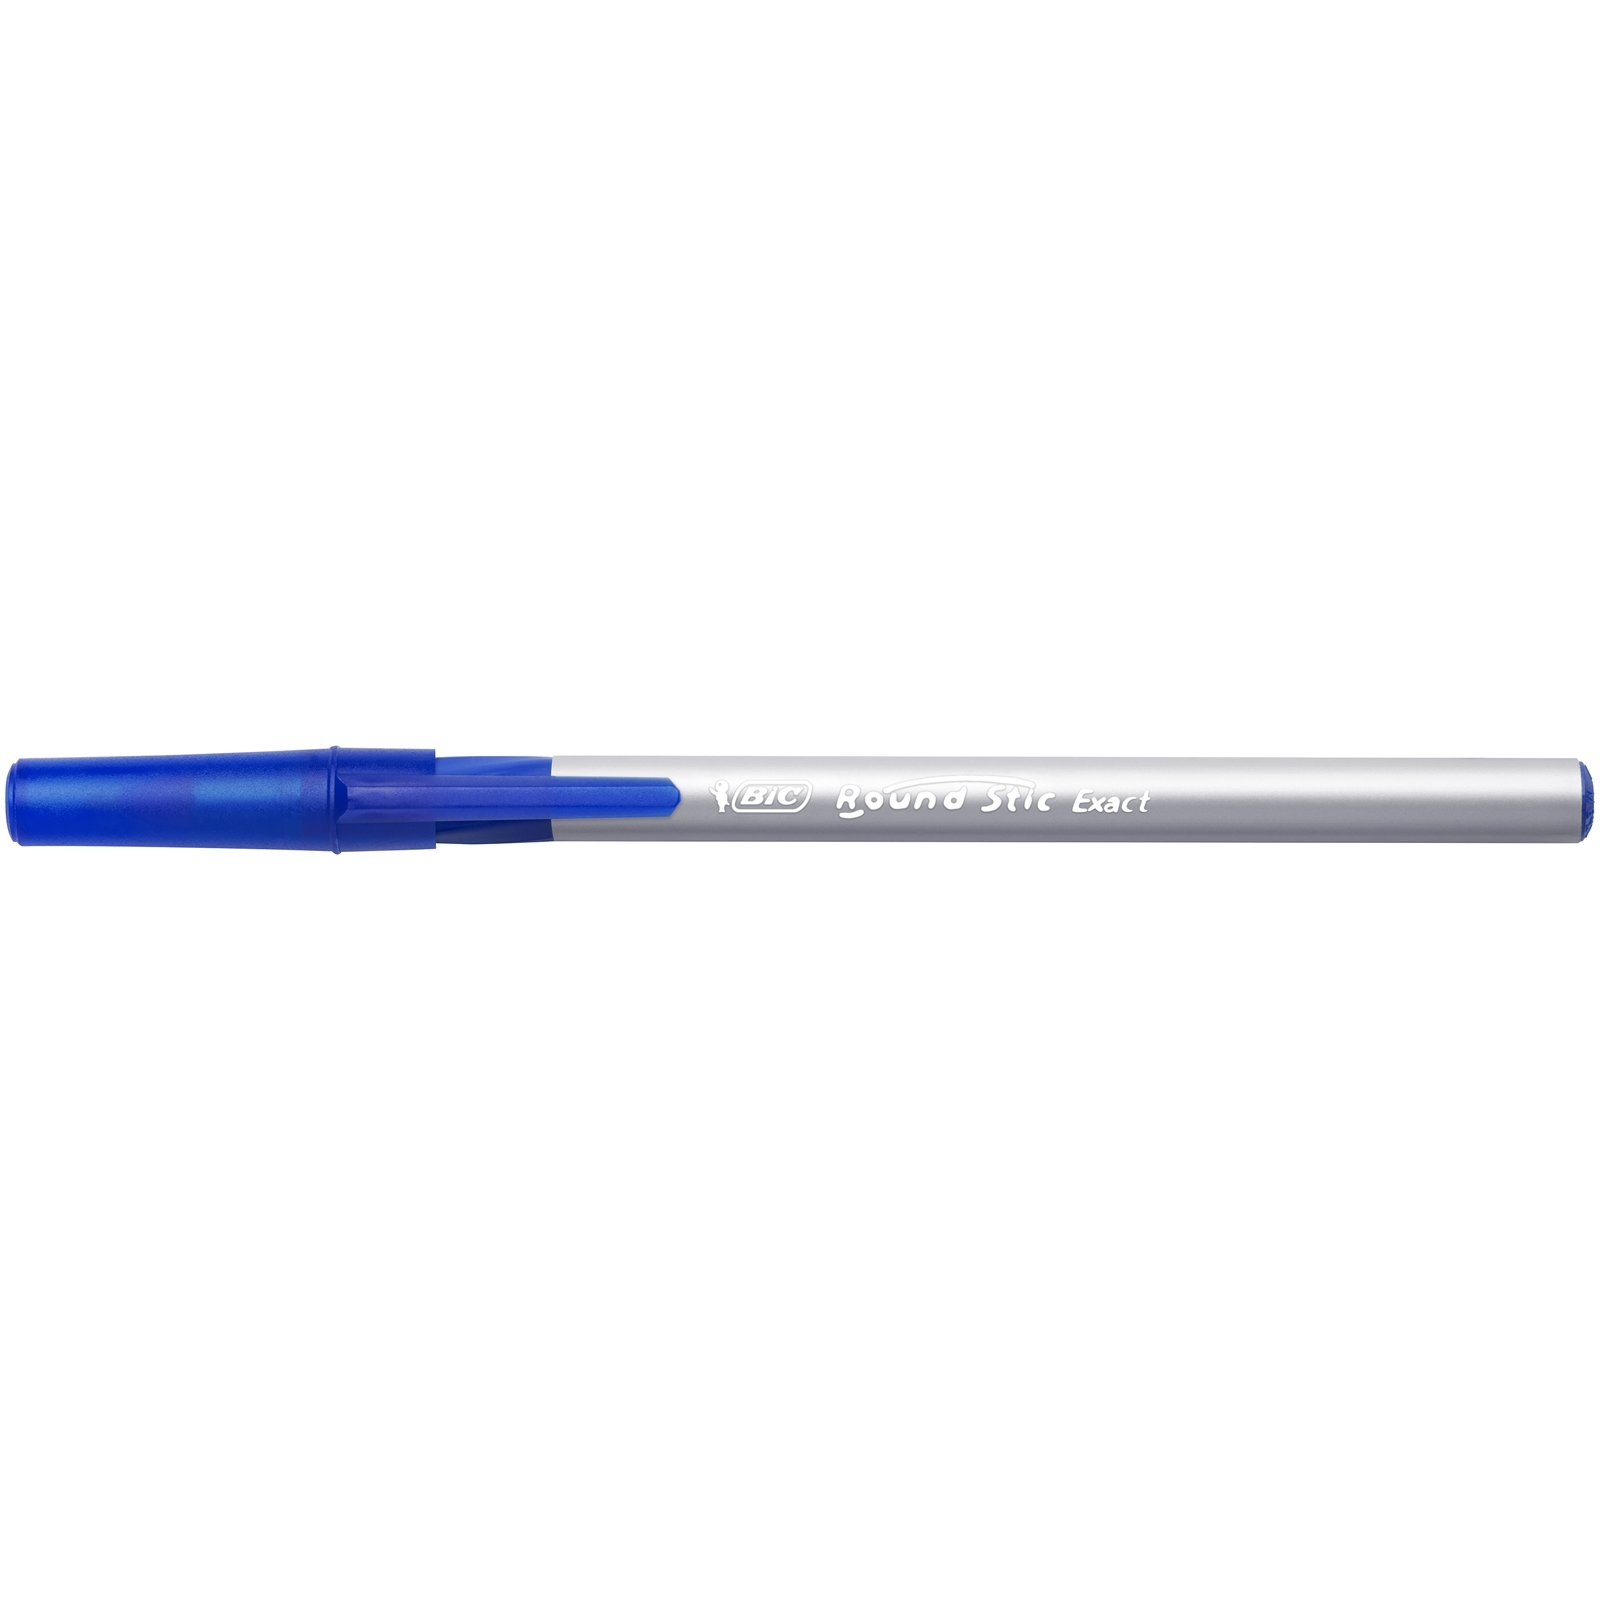 Ручка кулькова BIC Round Stic Exact, 0,36 мм, синій, 4 шт. (932857) - фото 4